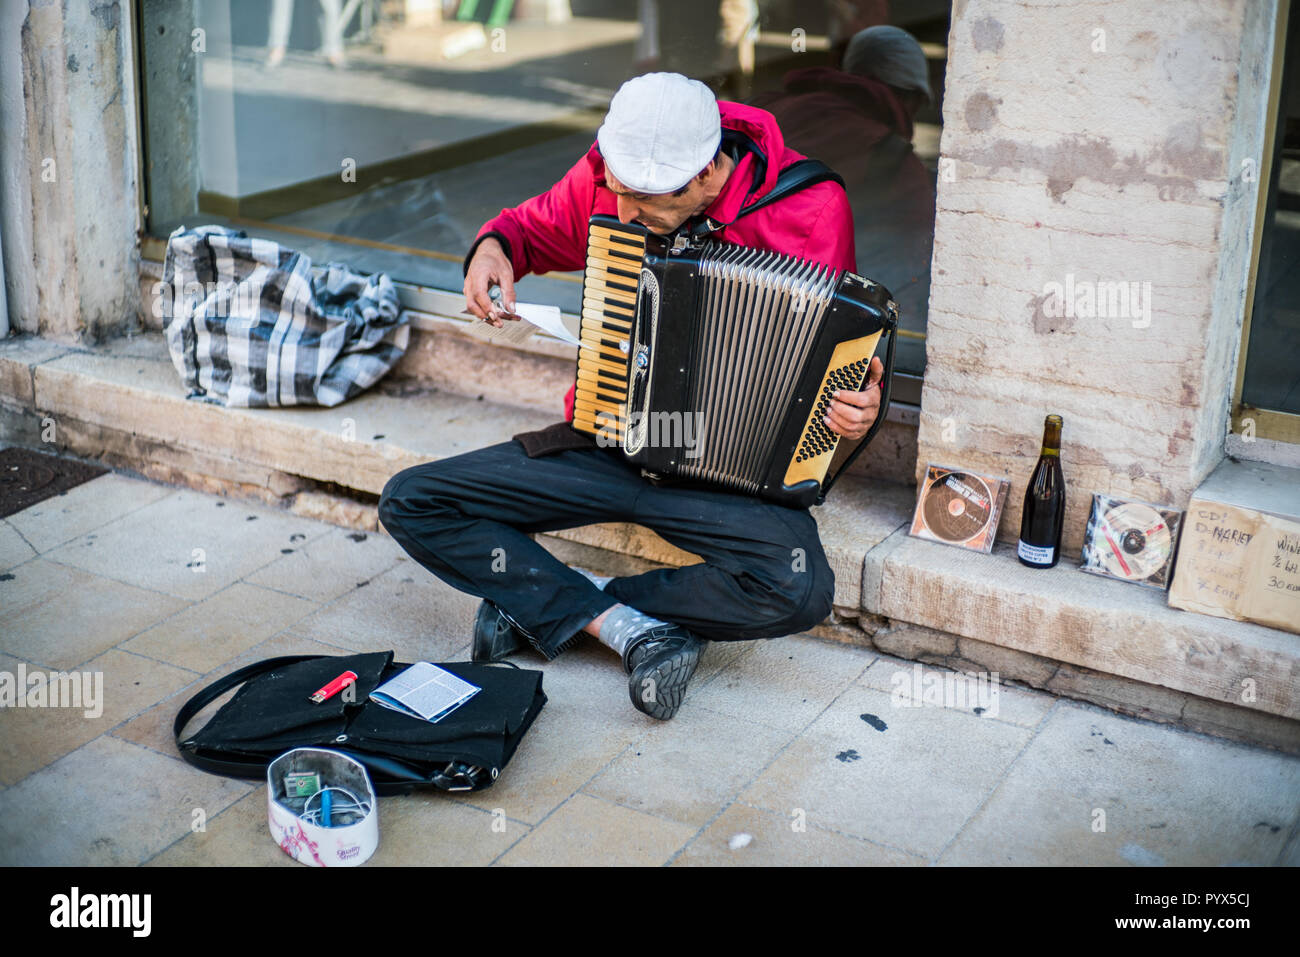 man playing on harmonium, Street market, Beaune, Burgundy, France, Europe. Stock Photo